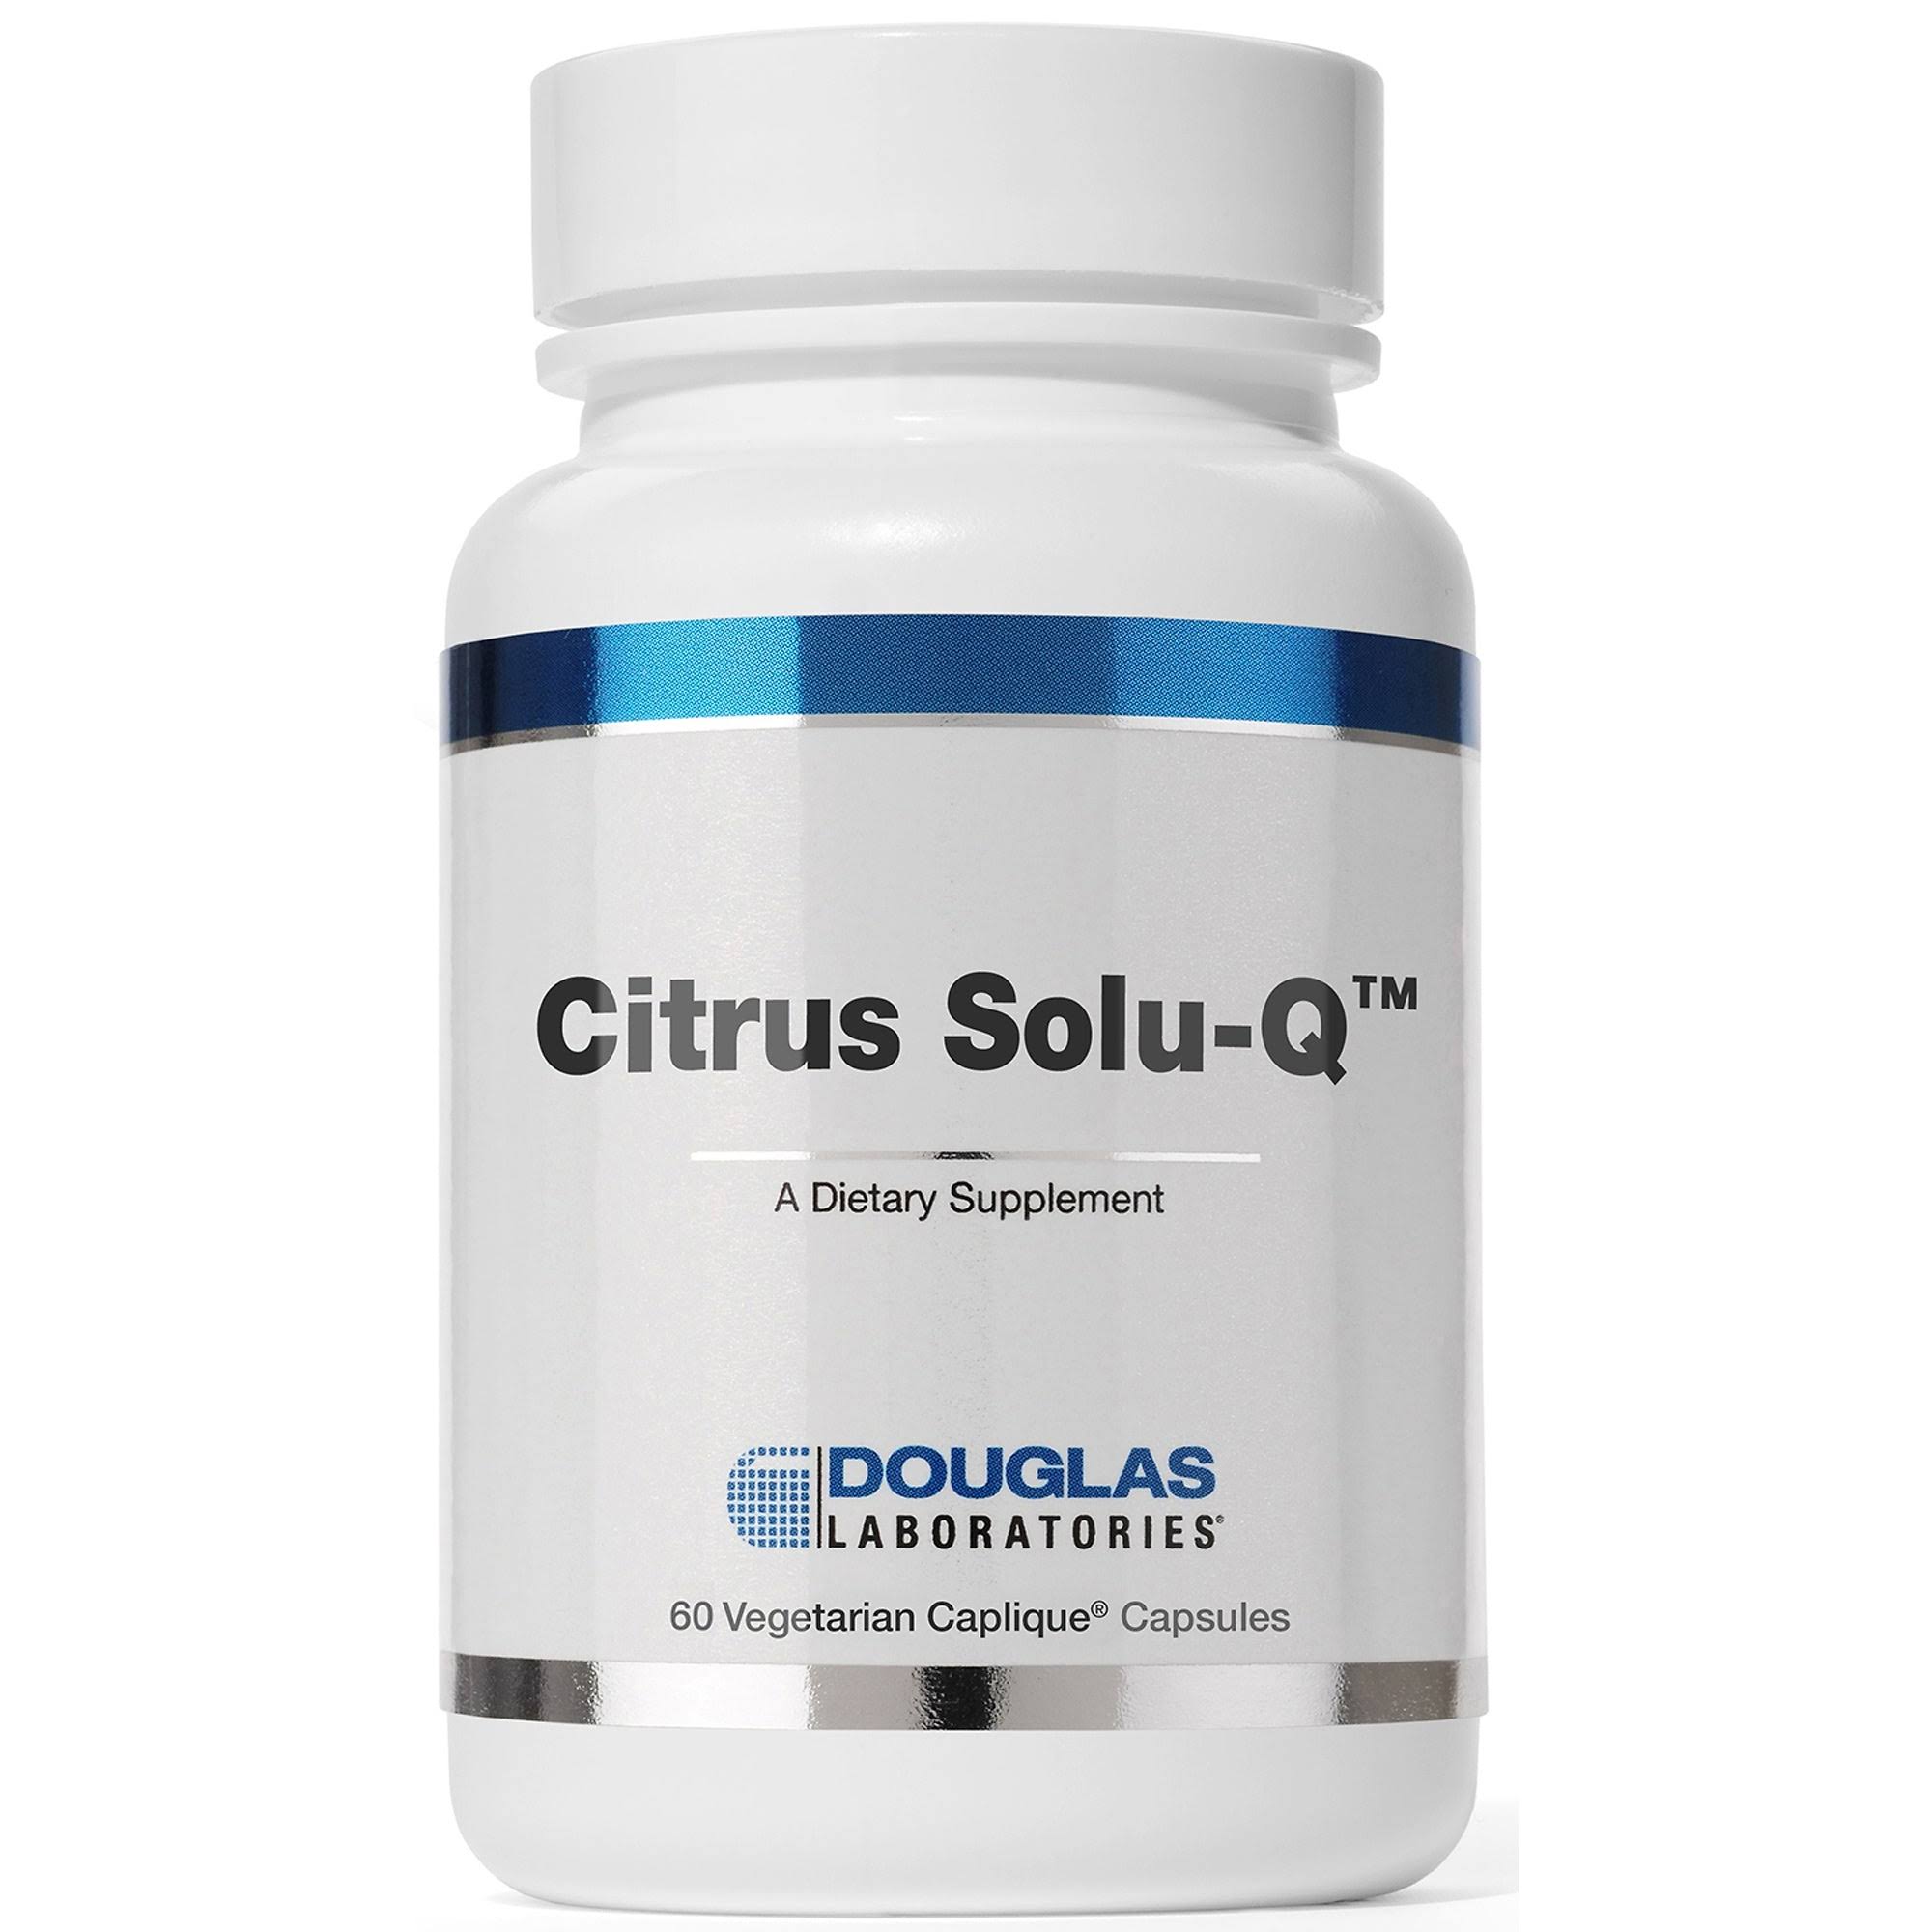 Douglas Laboratories - Citrus Solu-Q - 60 Caplique Capsules